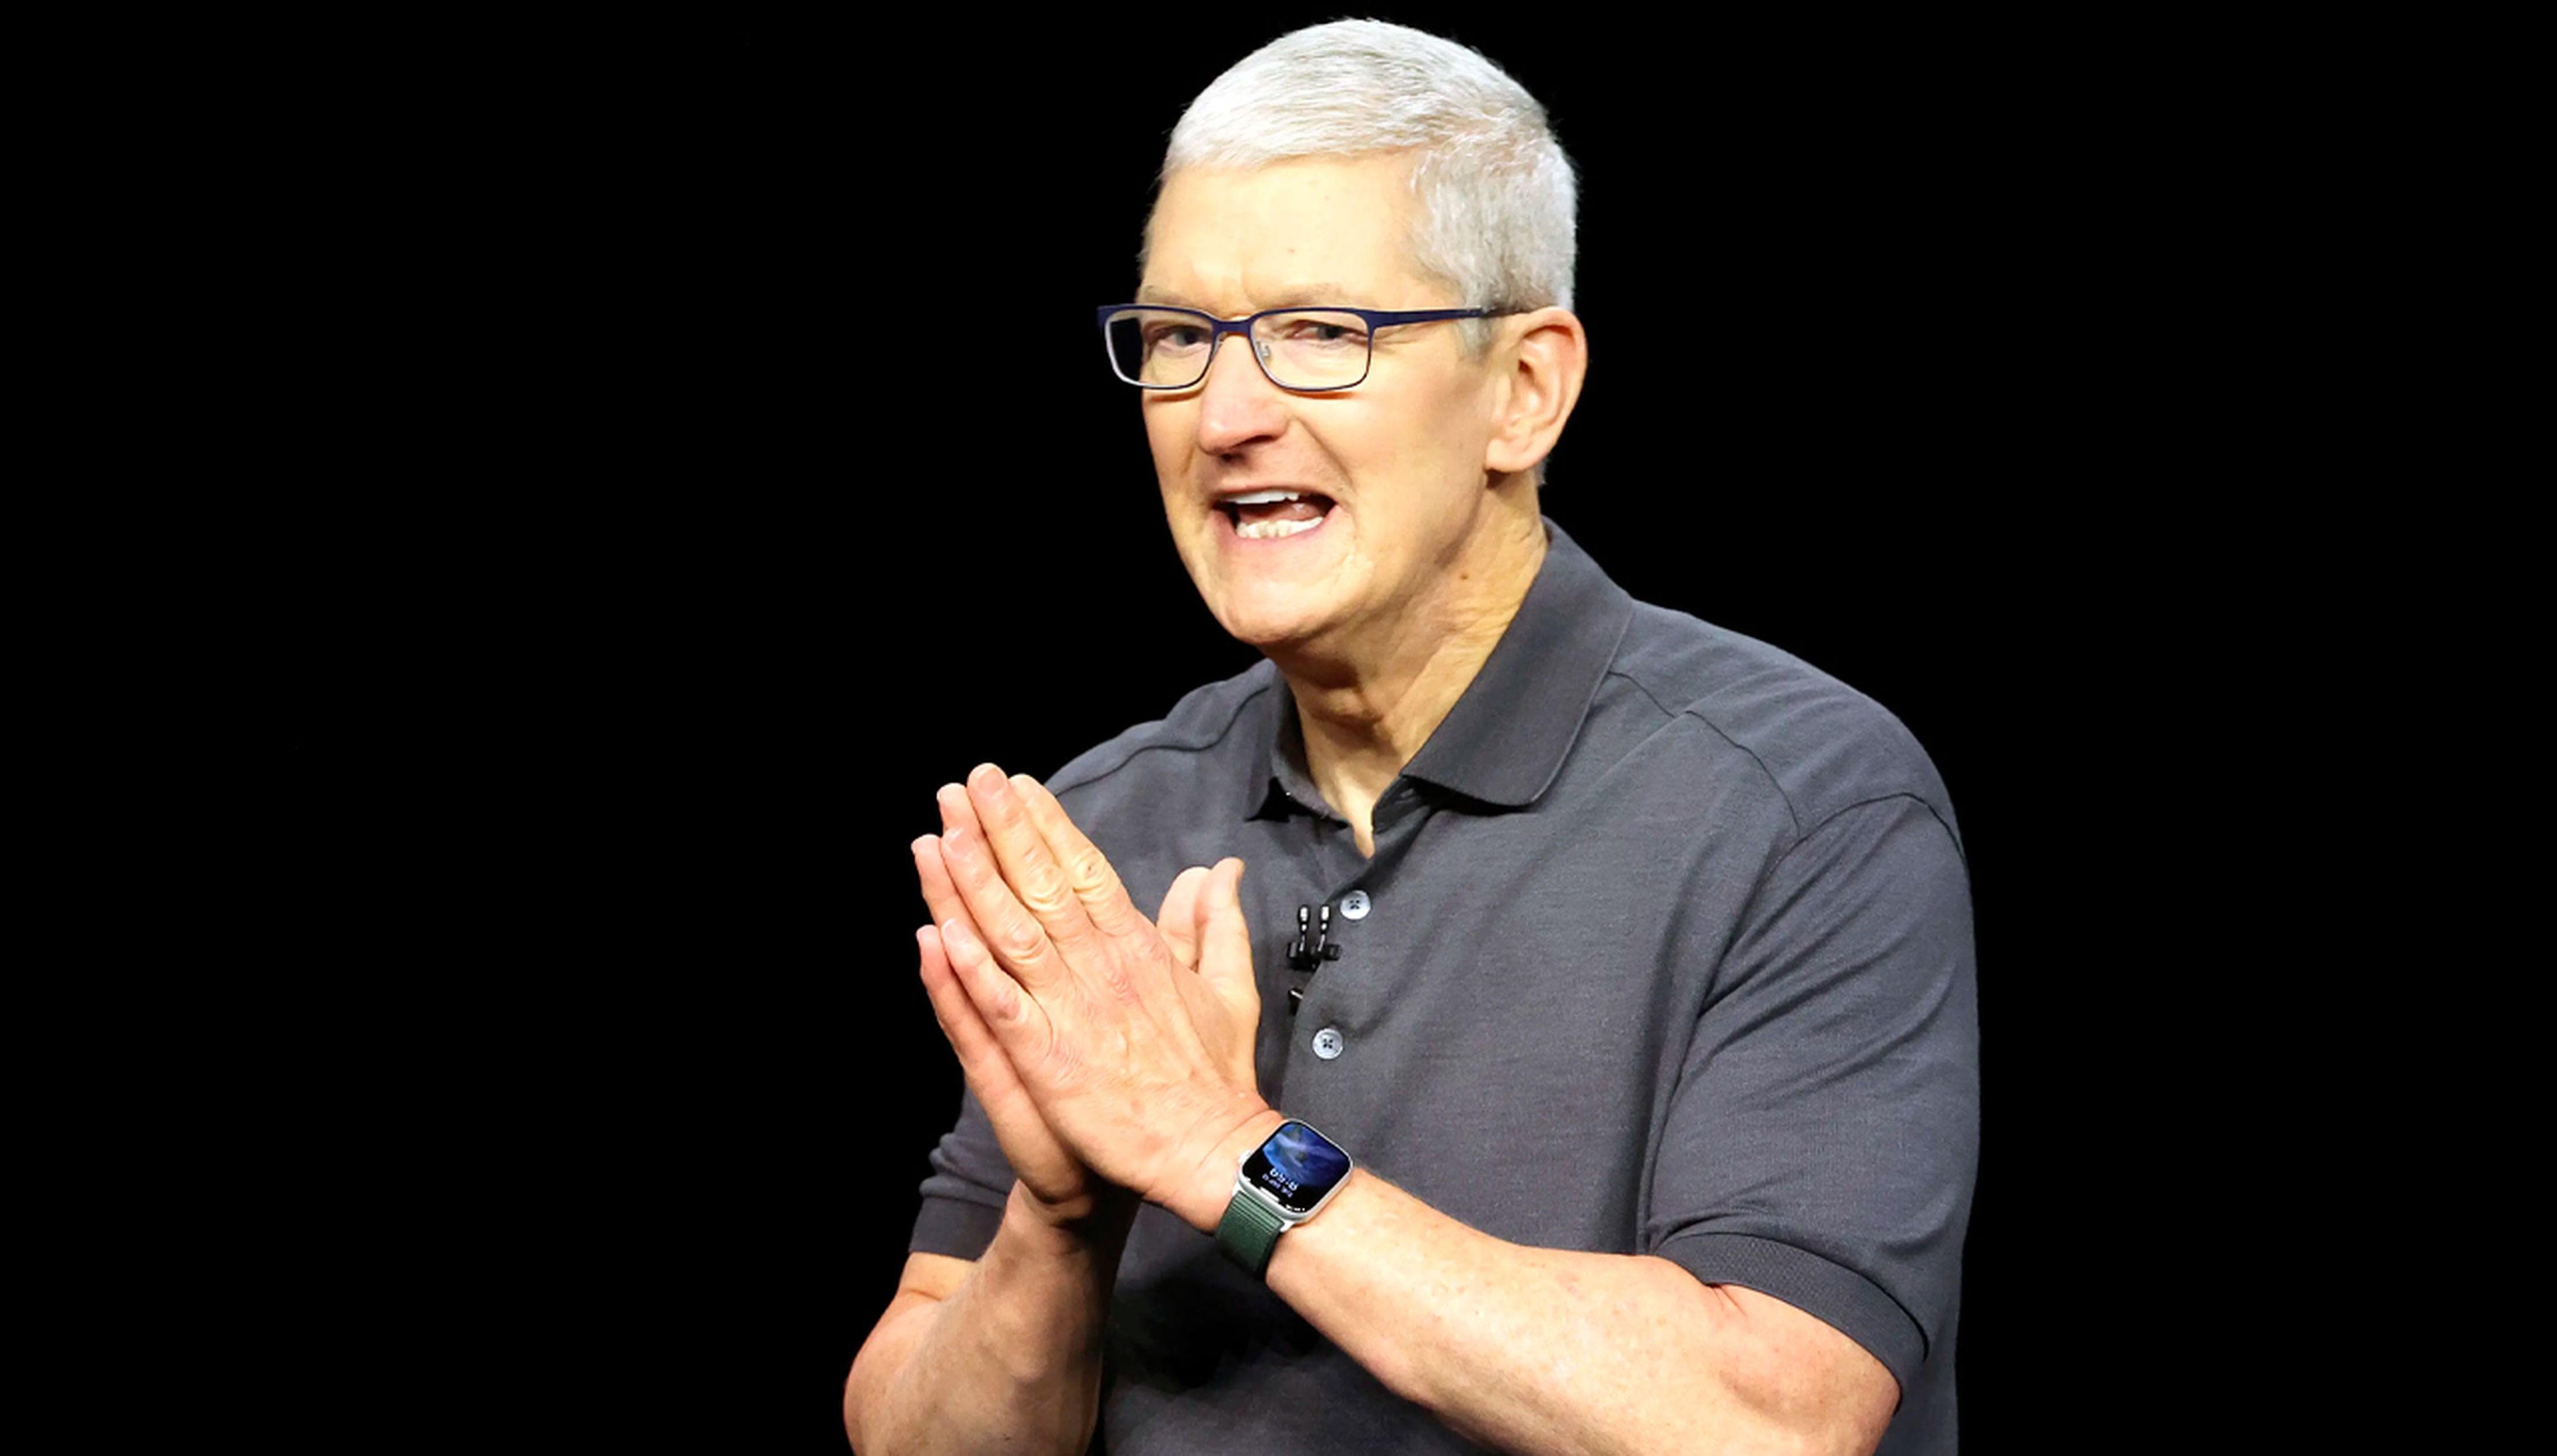 Cuando Tim Cook viste de manera informal, se le suele ver con un Apple Watch.